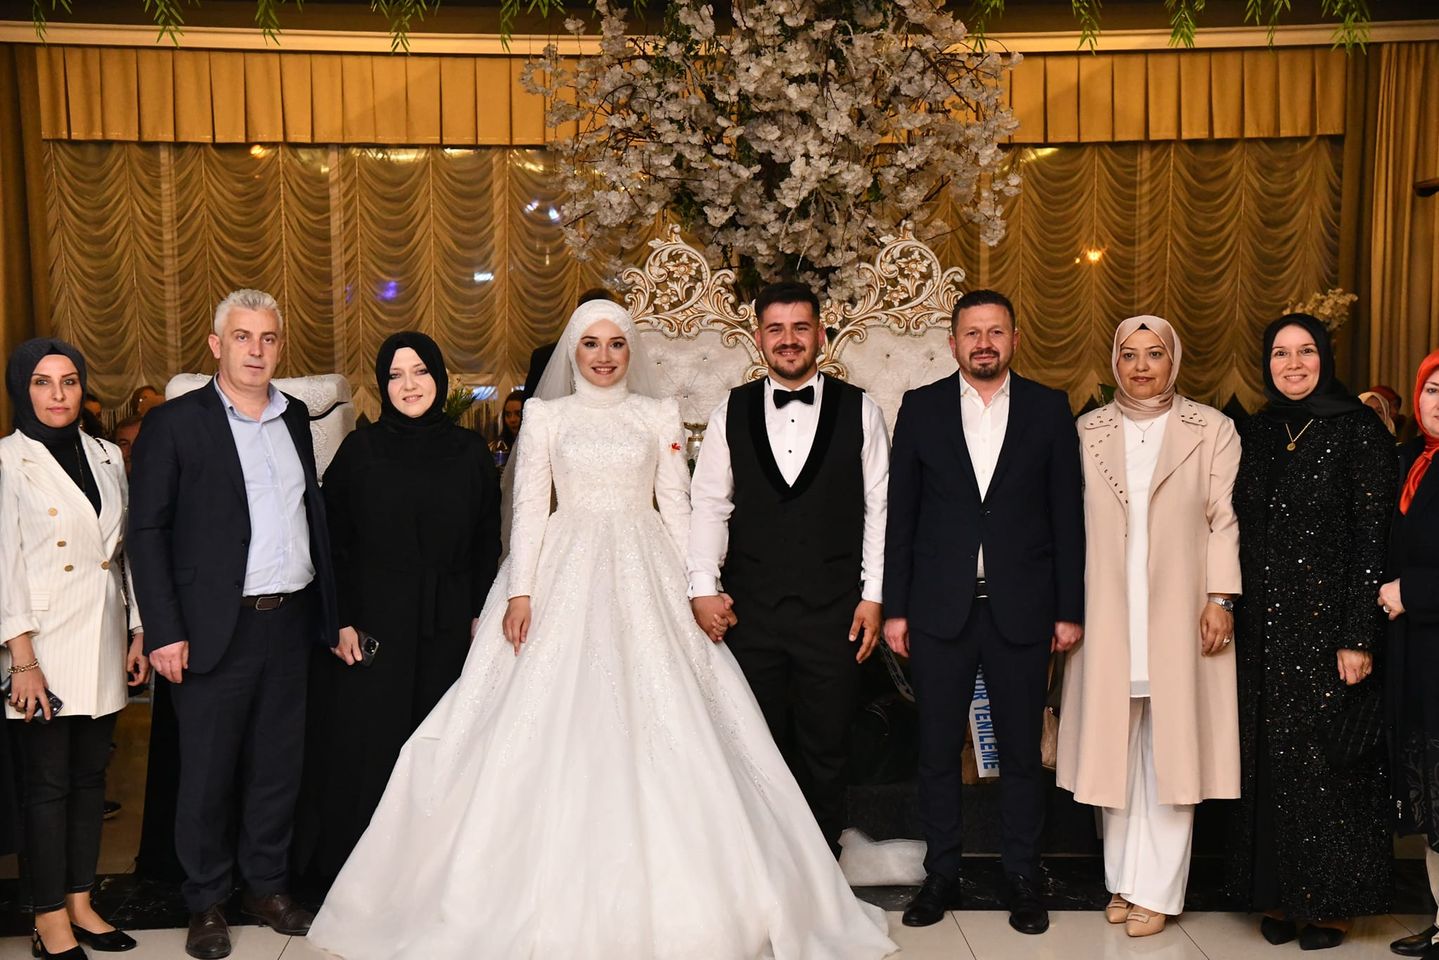 Balıkesir'de Semazenlerin Eşlik Ettiği Bir Düğünde Serra Nur ve Mustafa Can Evlilik Yolunda İlk Adımlarını Attı.